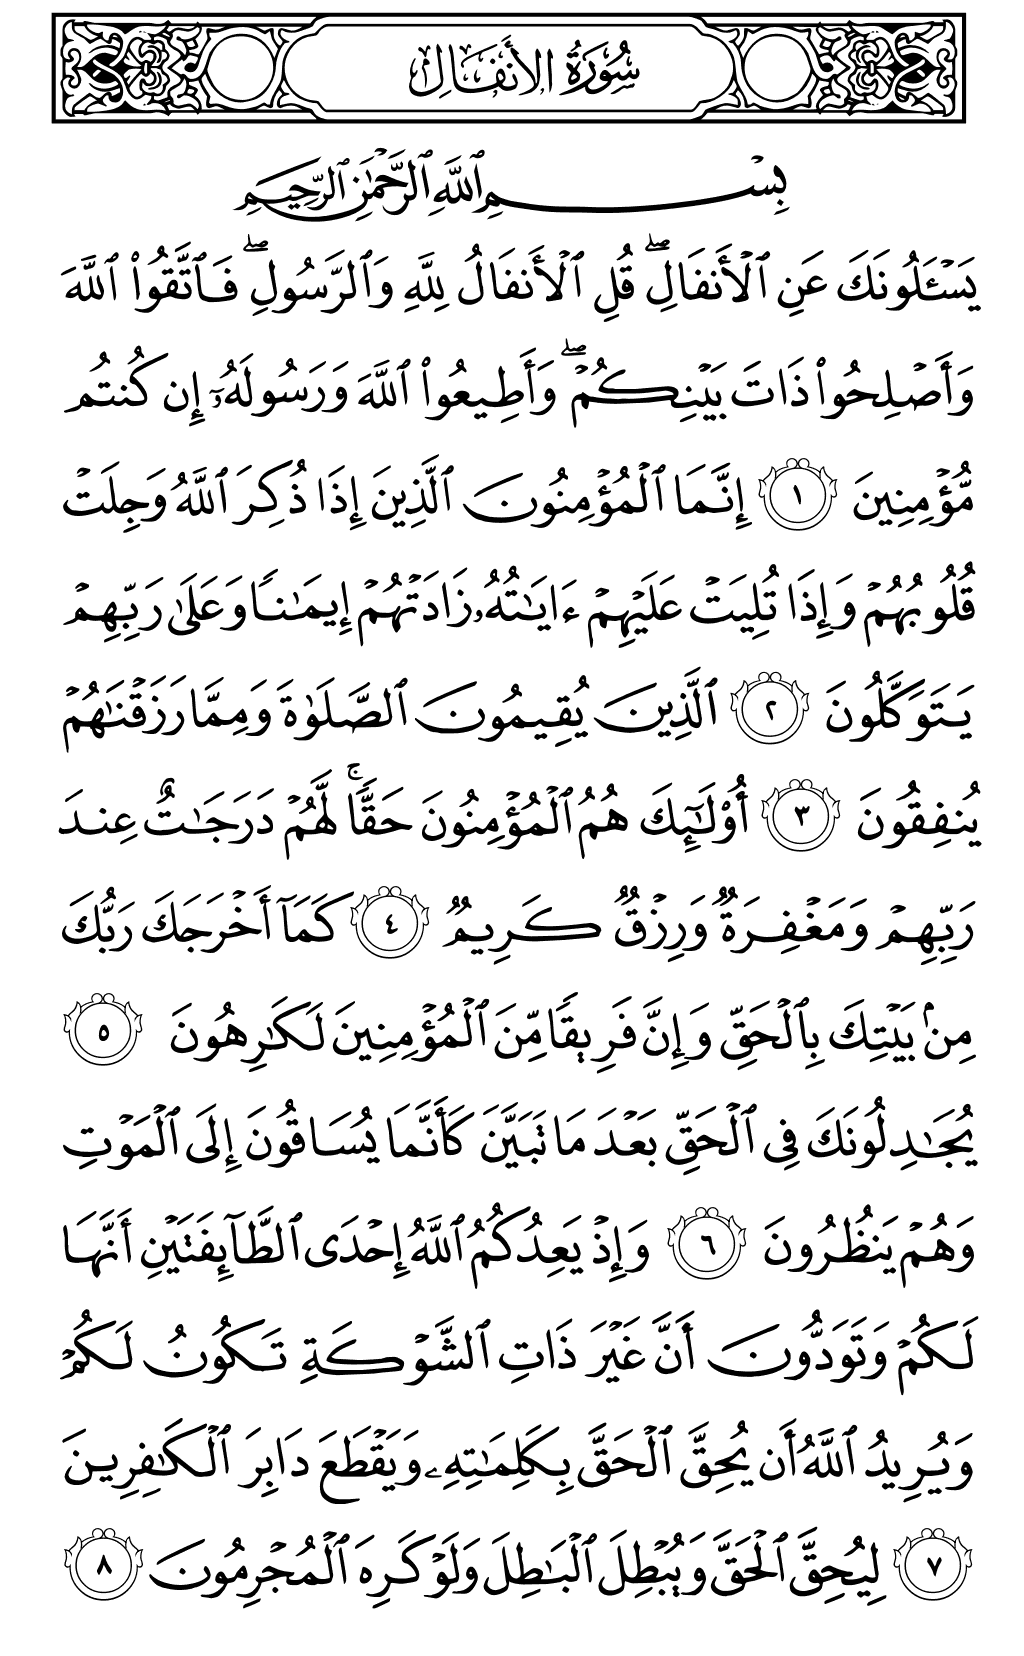 الصفحة رقم 177 من القرآن الكريم